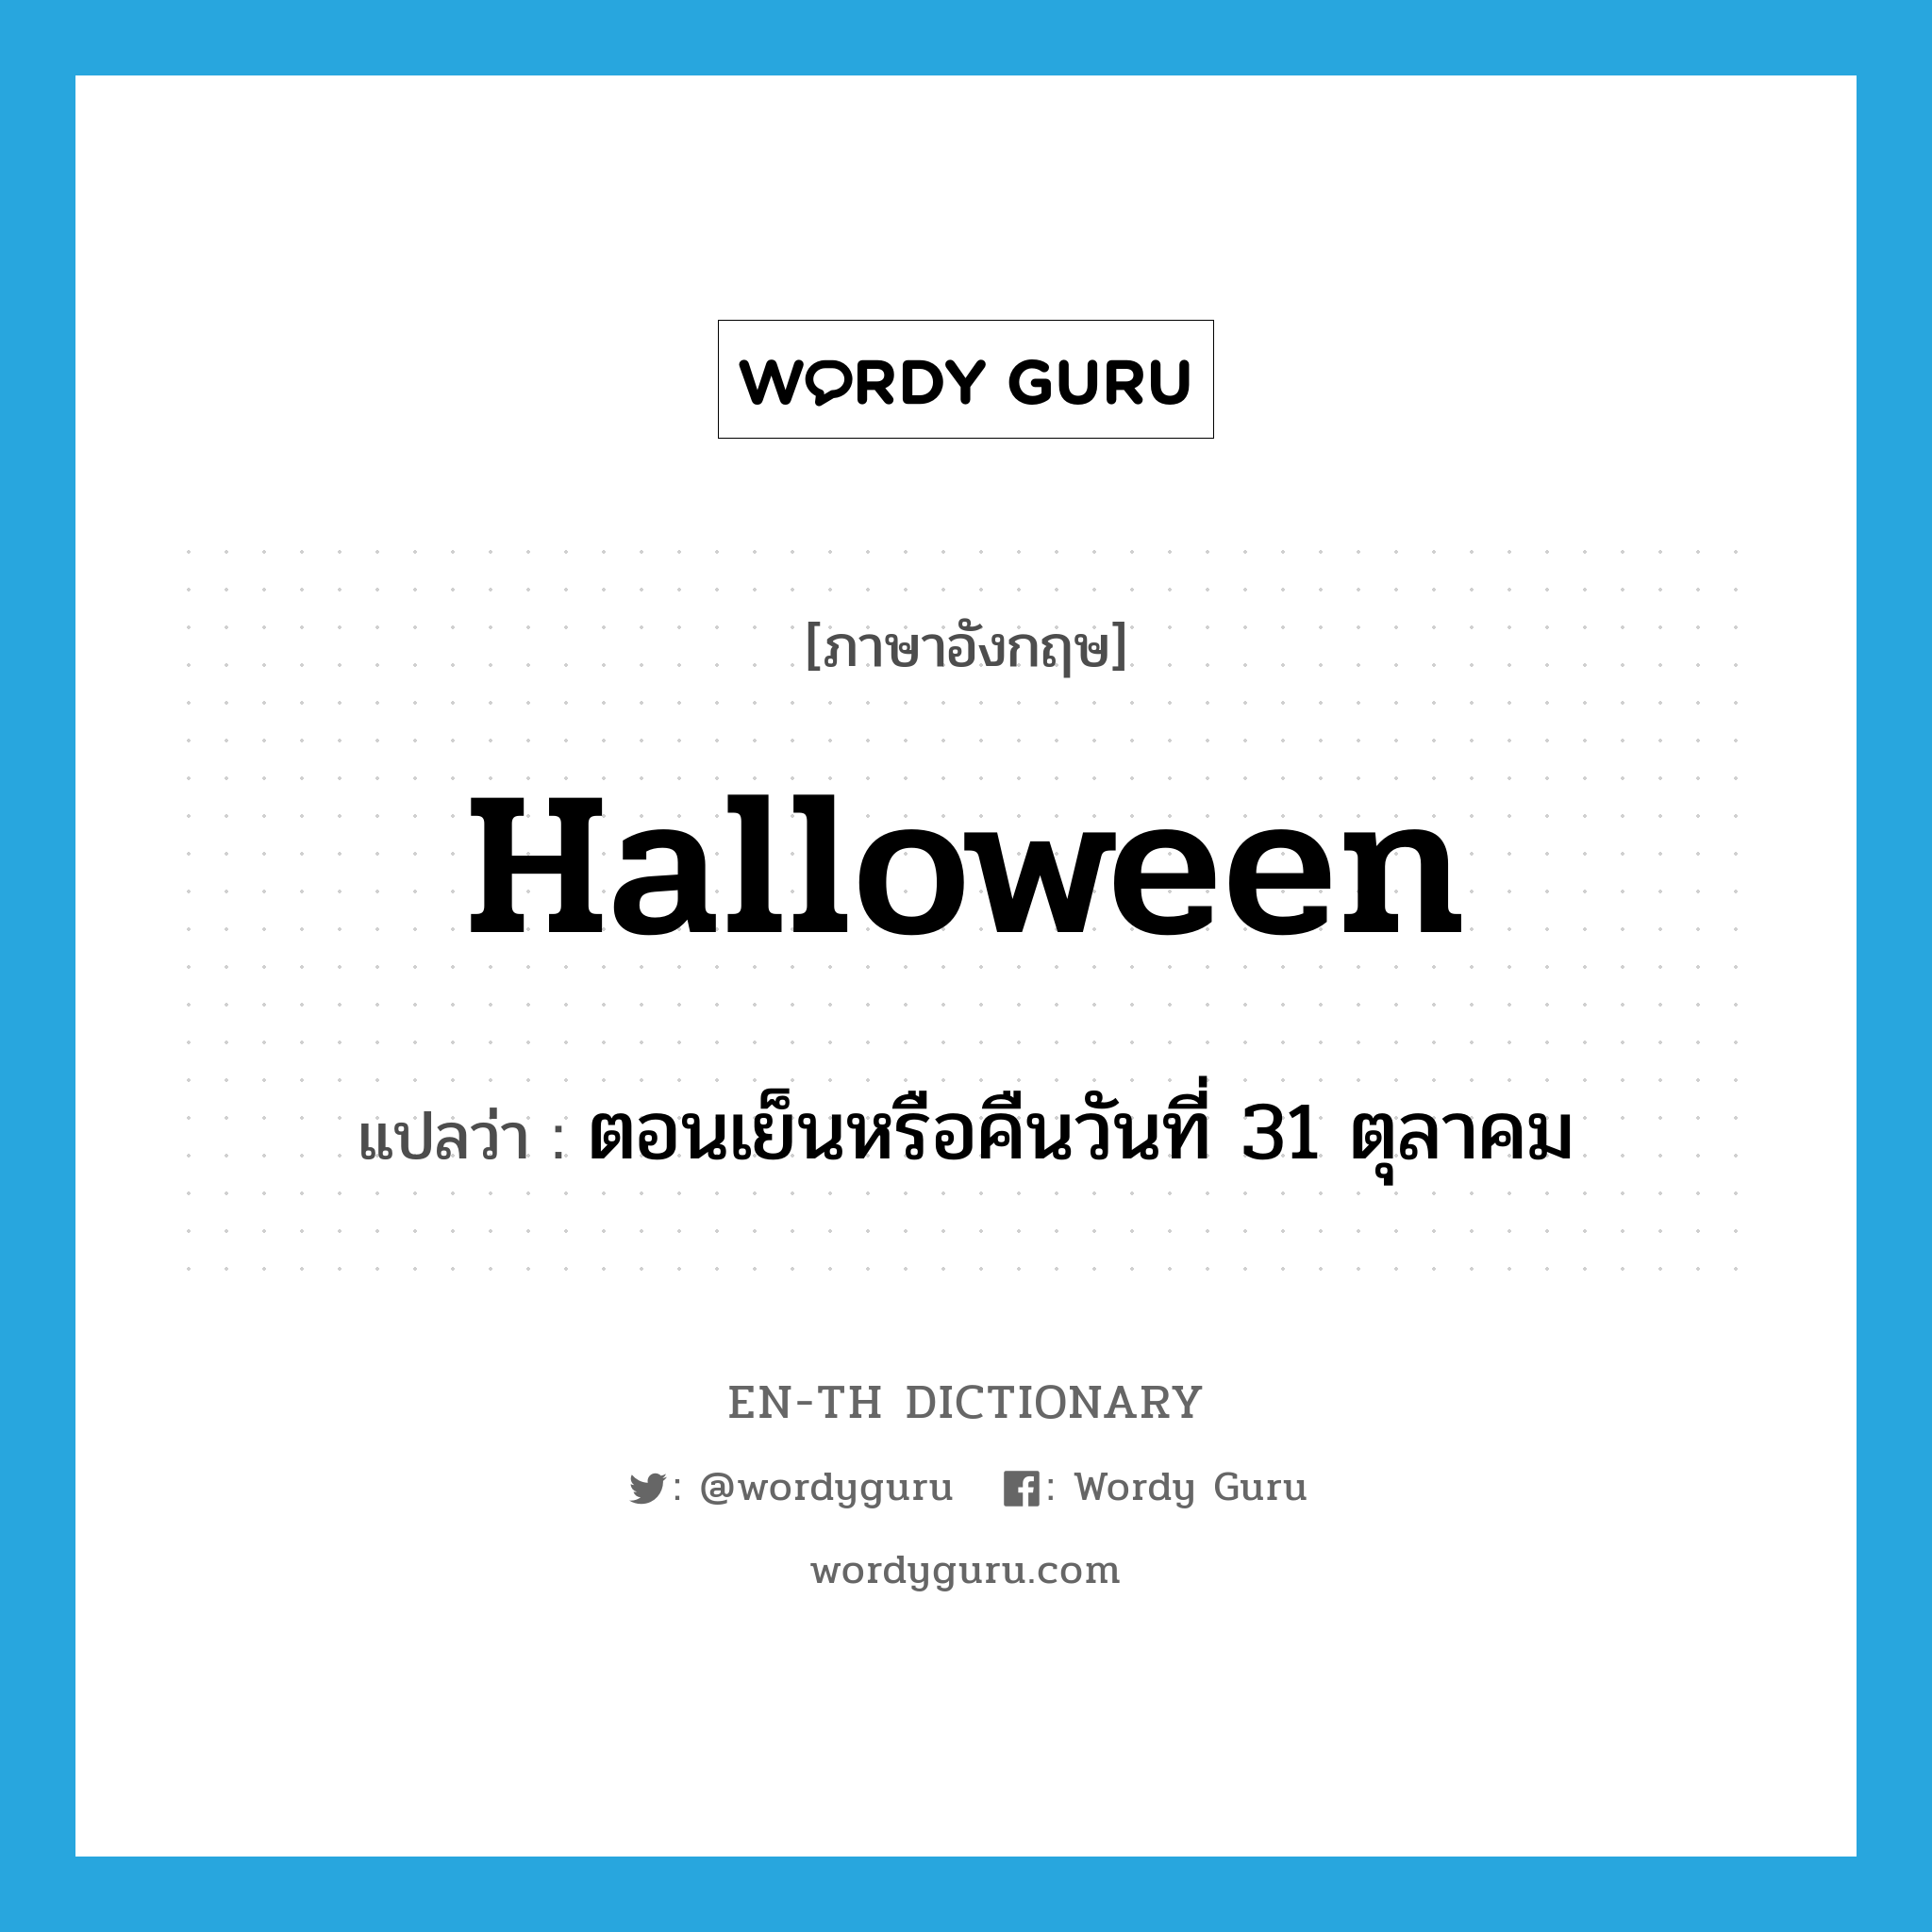 ตอนเย็นหรือคืนวันที่ 31 ตุลาคม ภาษาอังกฤษ?, คำศัพท์ภาษาอังกฤษ ตอนเย็นหรือคืนวันที่ 31 ตุลาคม แปลว่า Halloween ประเภท N หมวด N